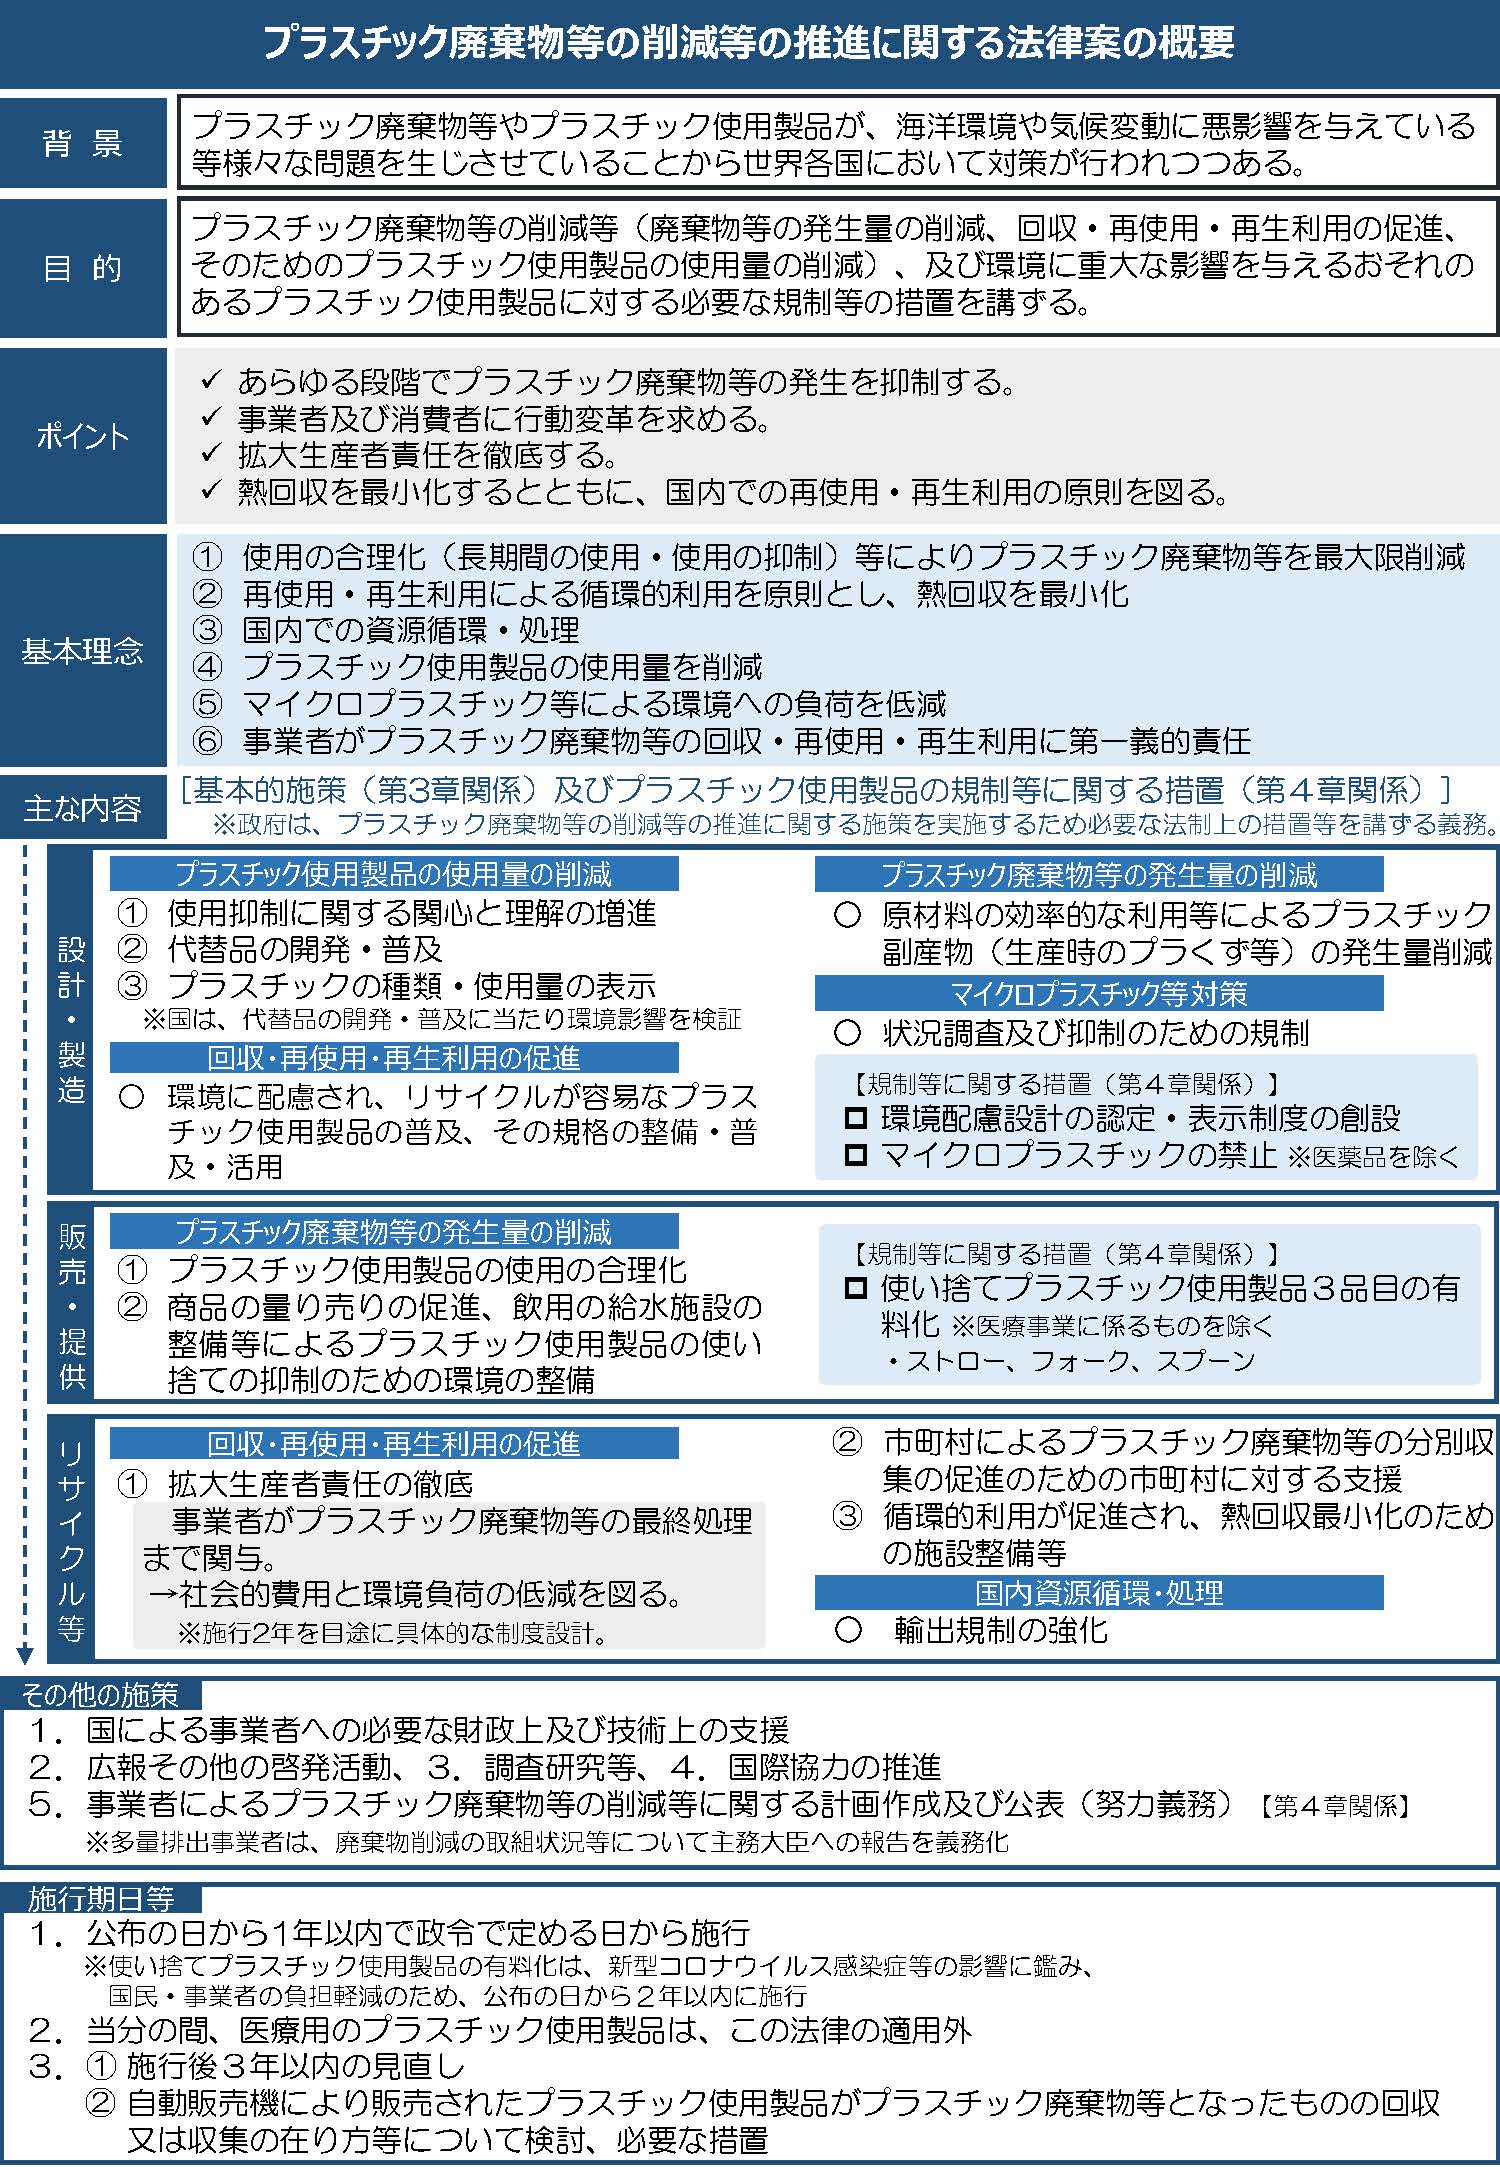 0510【概要】プラスチック廃棄物削減法案 pdf.jpg